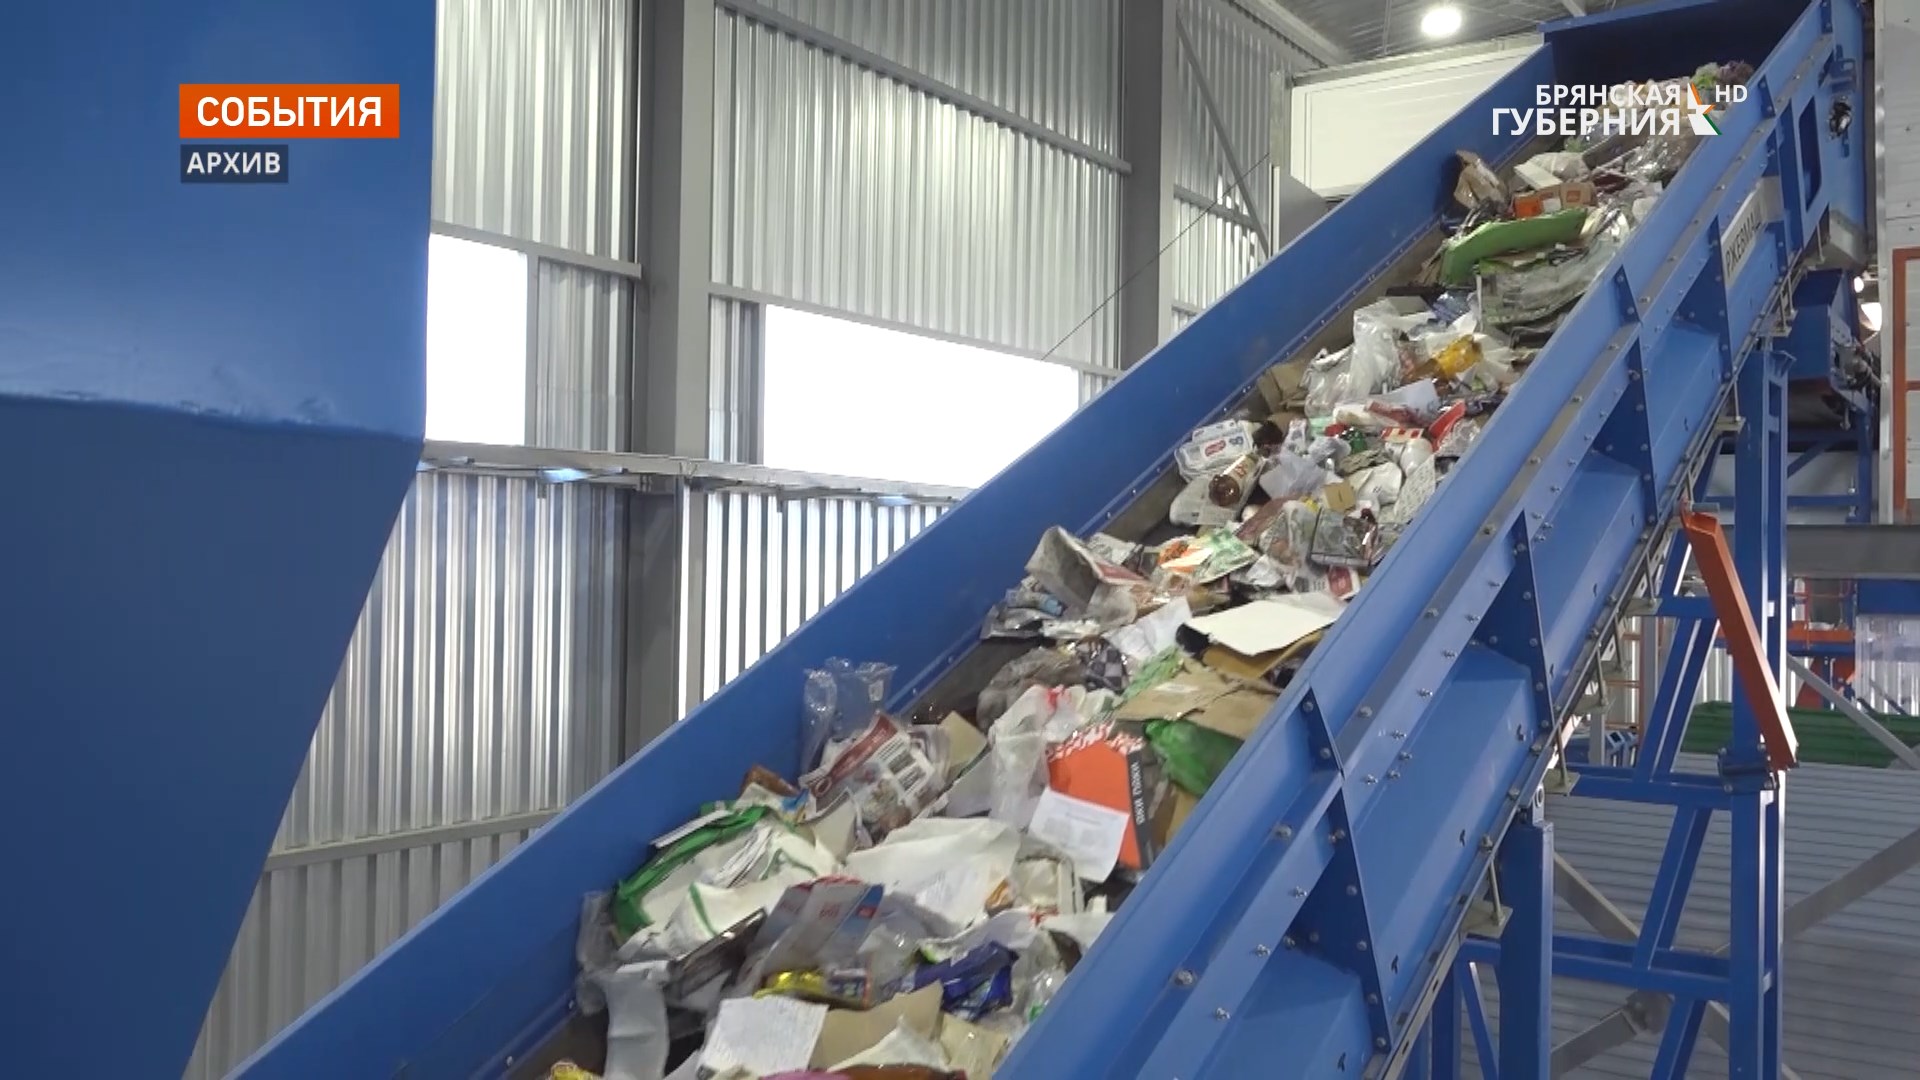 За три года в Брянской области заработали 4 мусоросортировочные станции